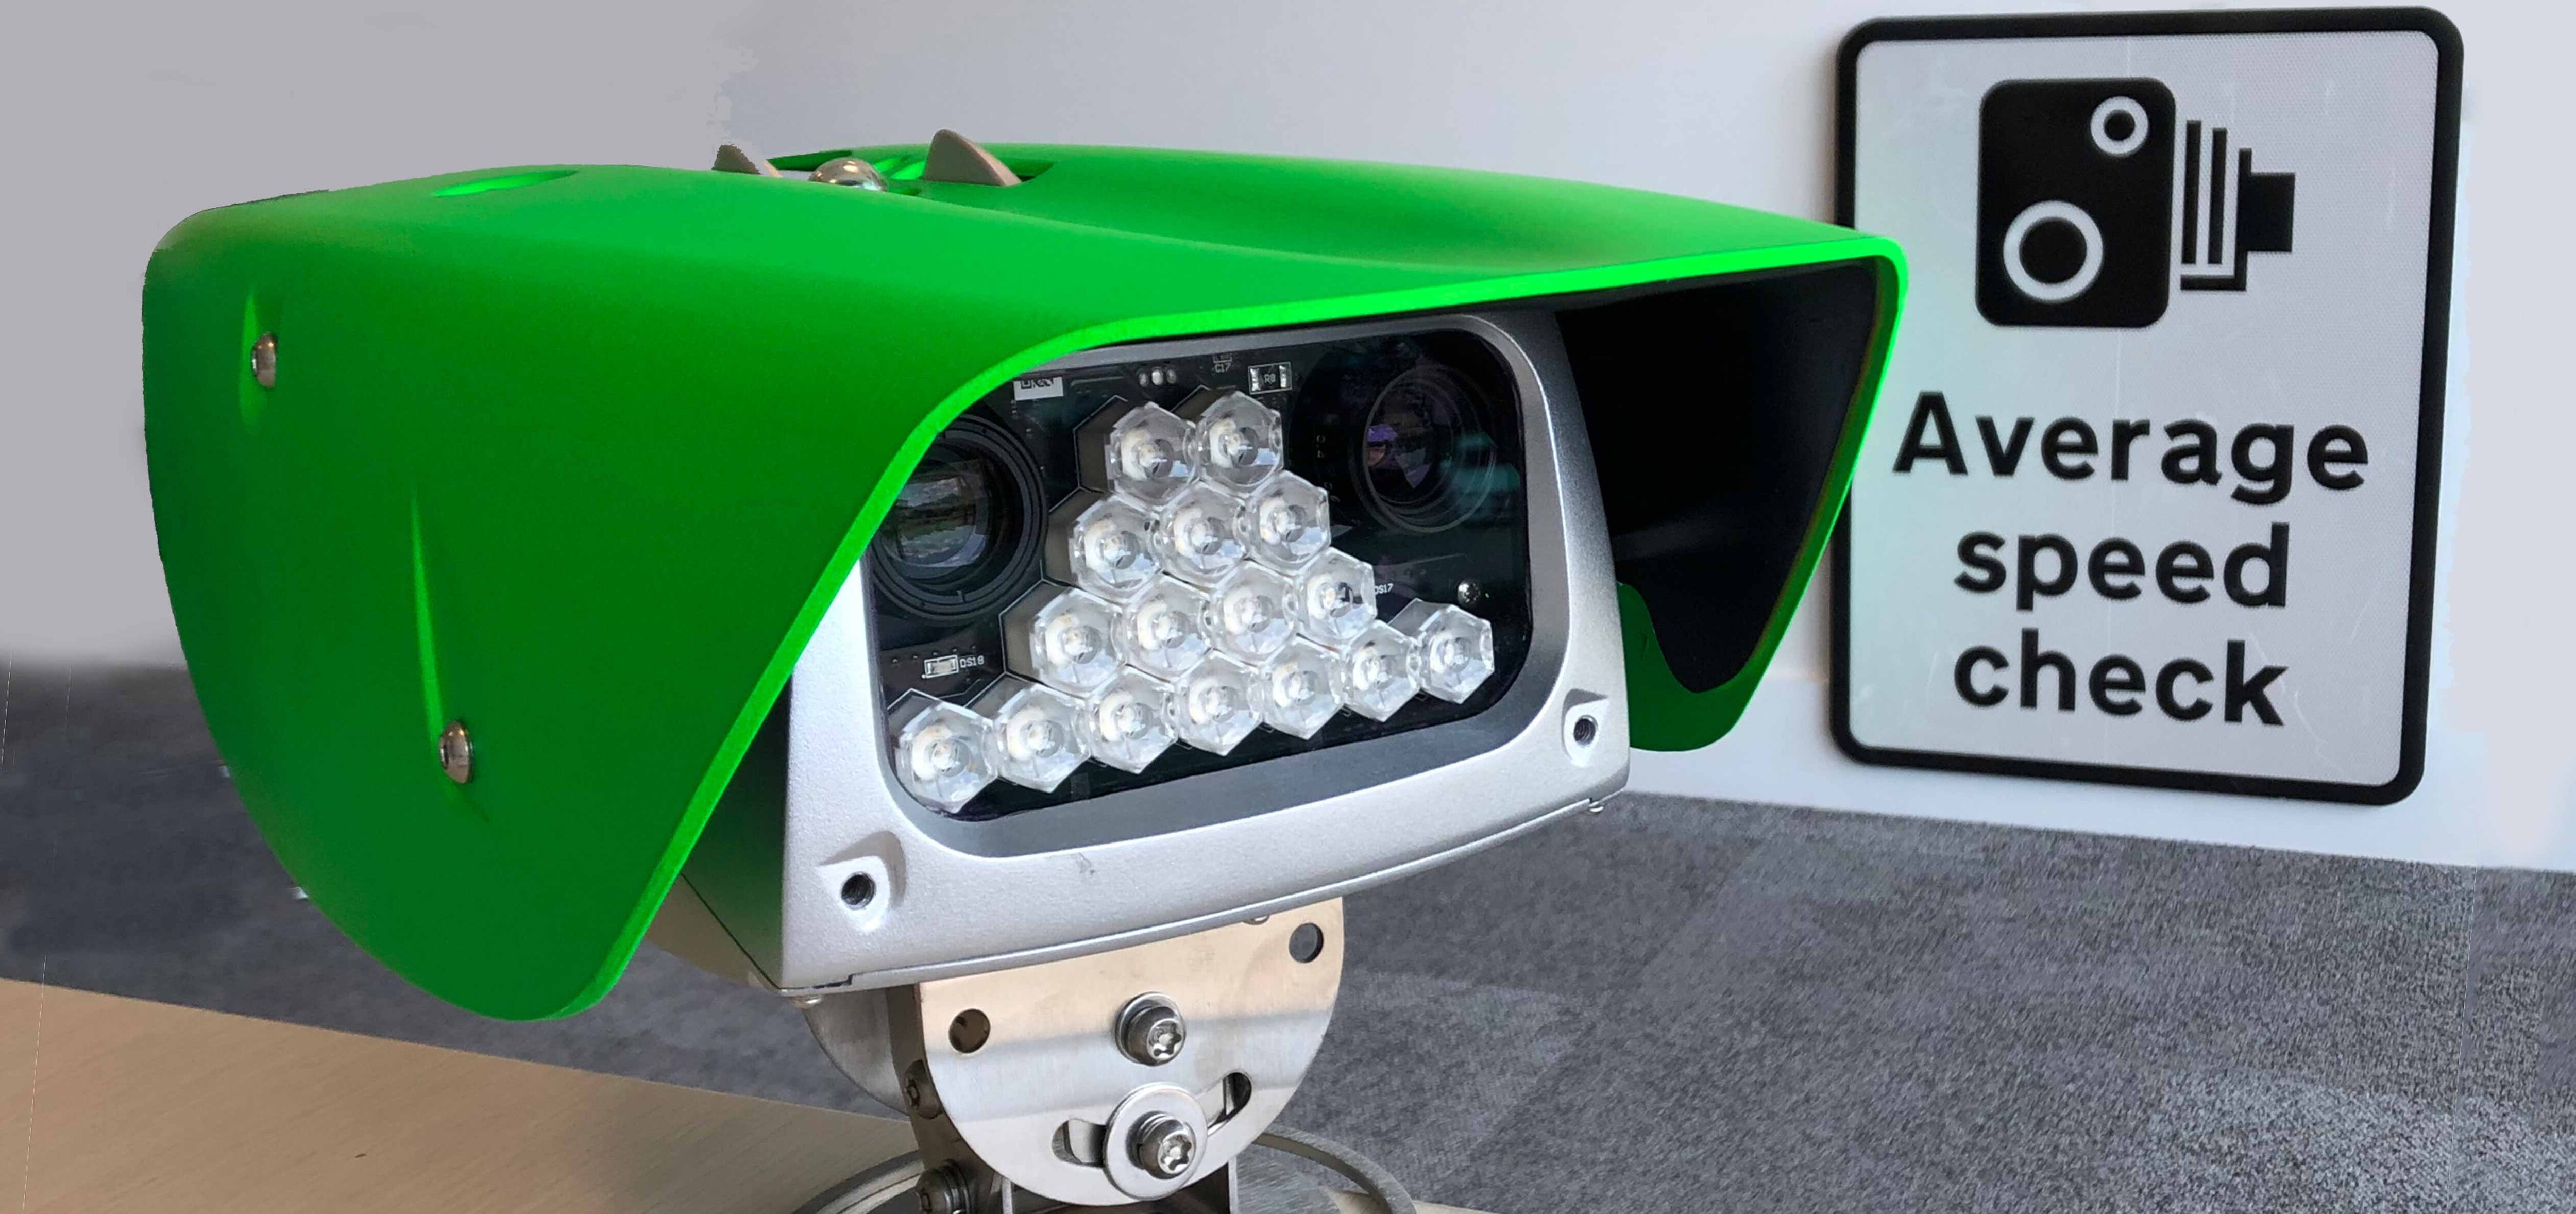 Grüne Umweltkameras für eine sauberere Welt – SPECS-Kameras